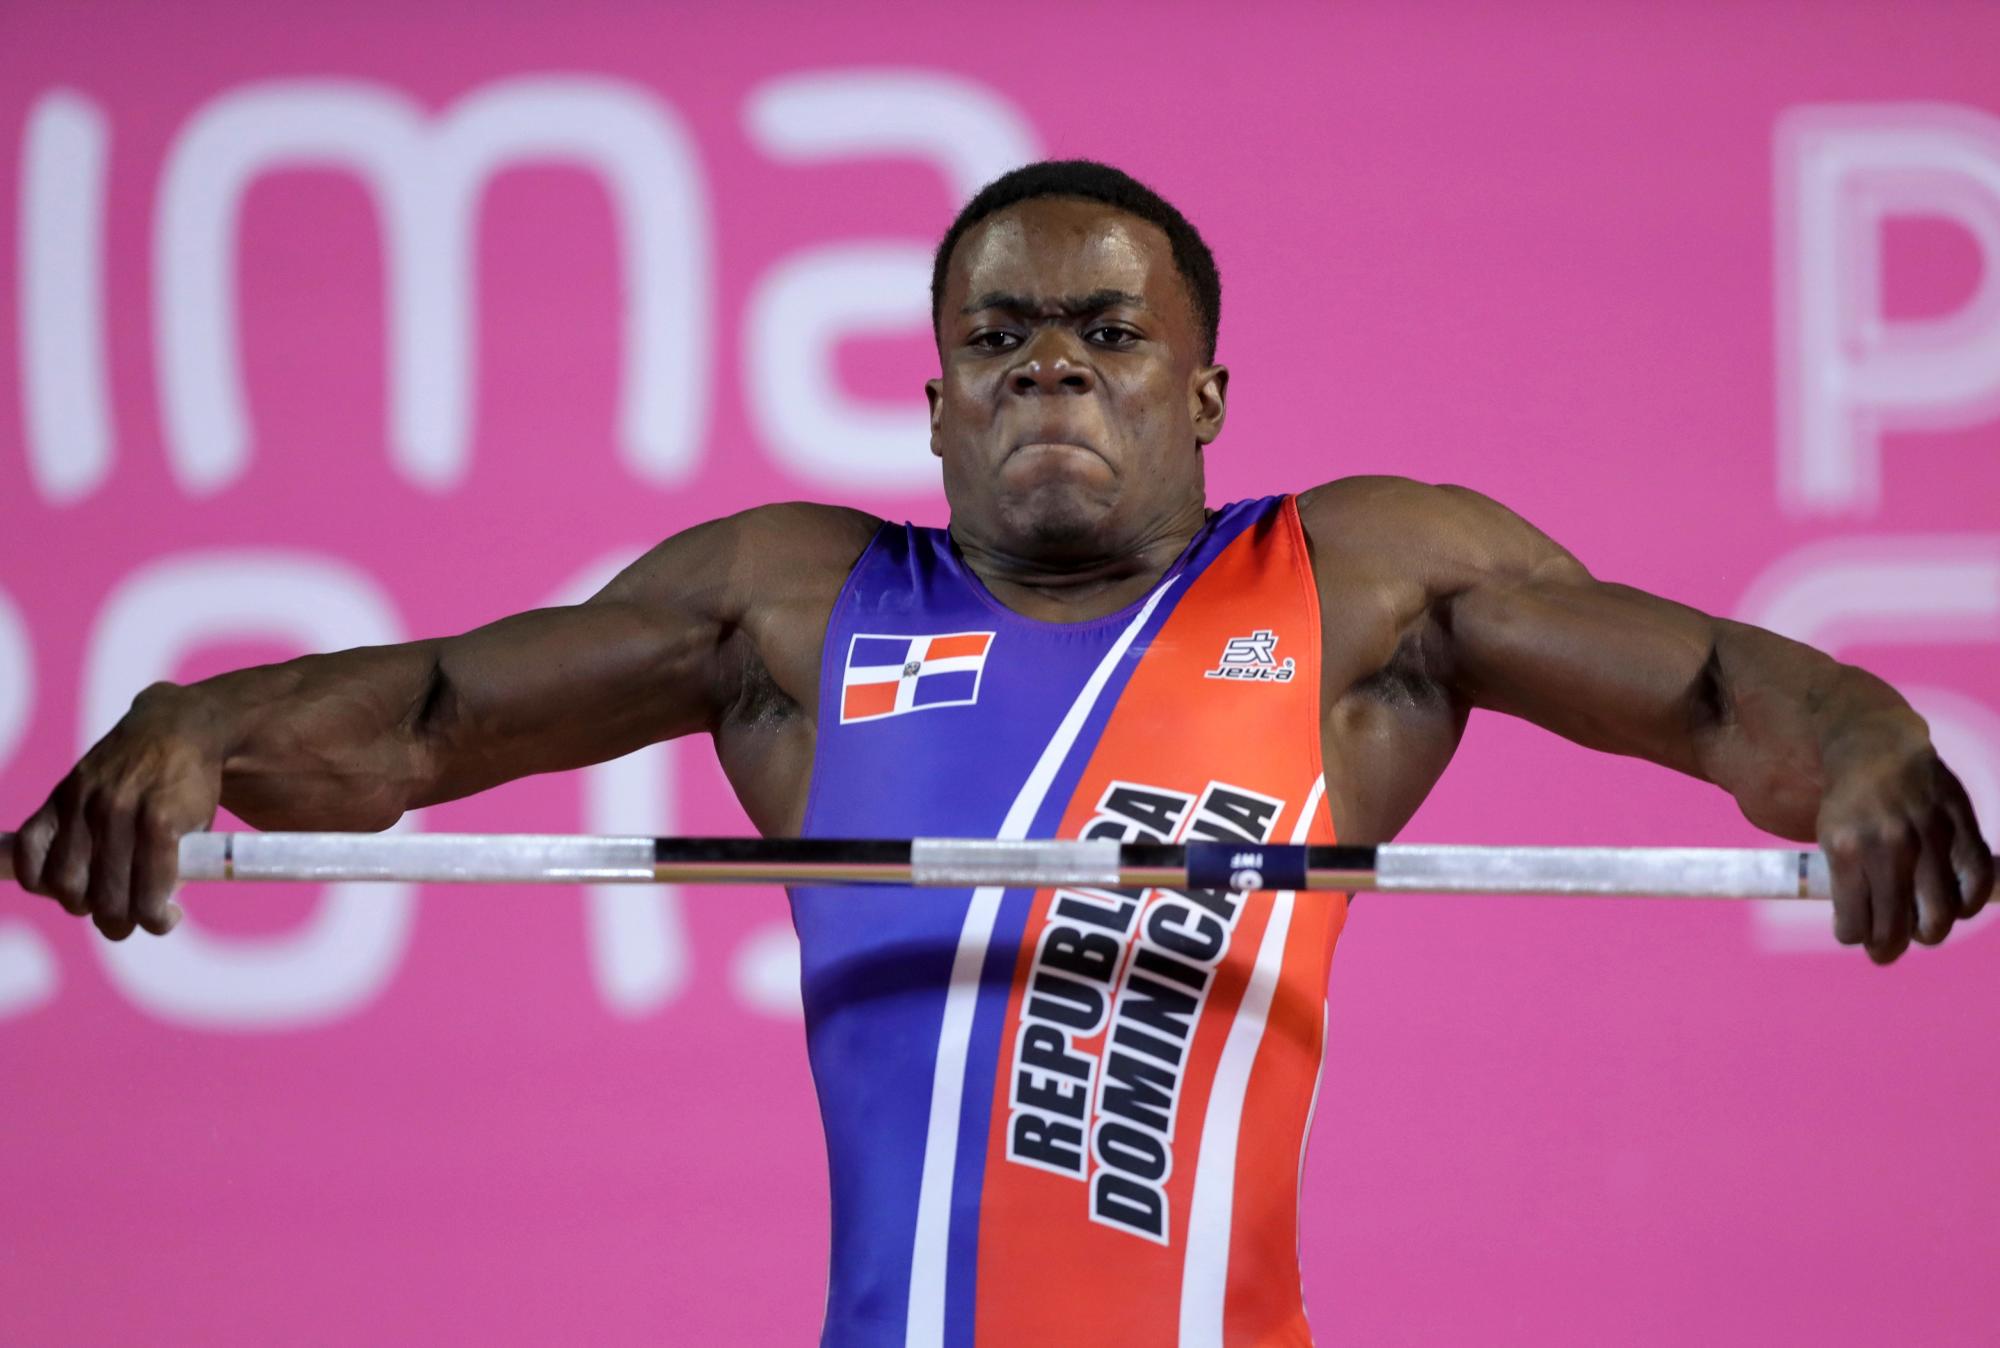 Zacarias Bonnat de la República Dominicana compite en el evento de levantamiento de pesas de 81 kg masculino en los Juegos Panamericanos en Lima, Perú, el domingo 28 de julio de 2019.